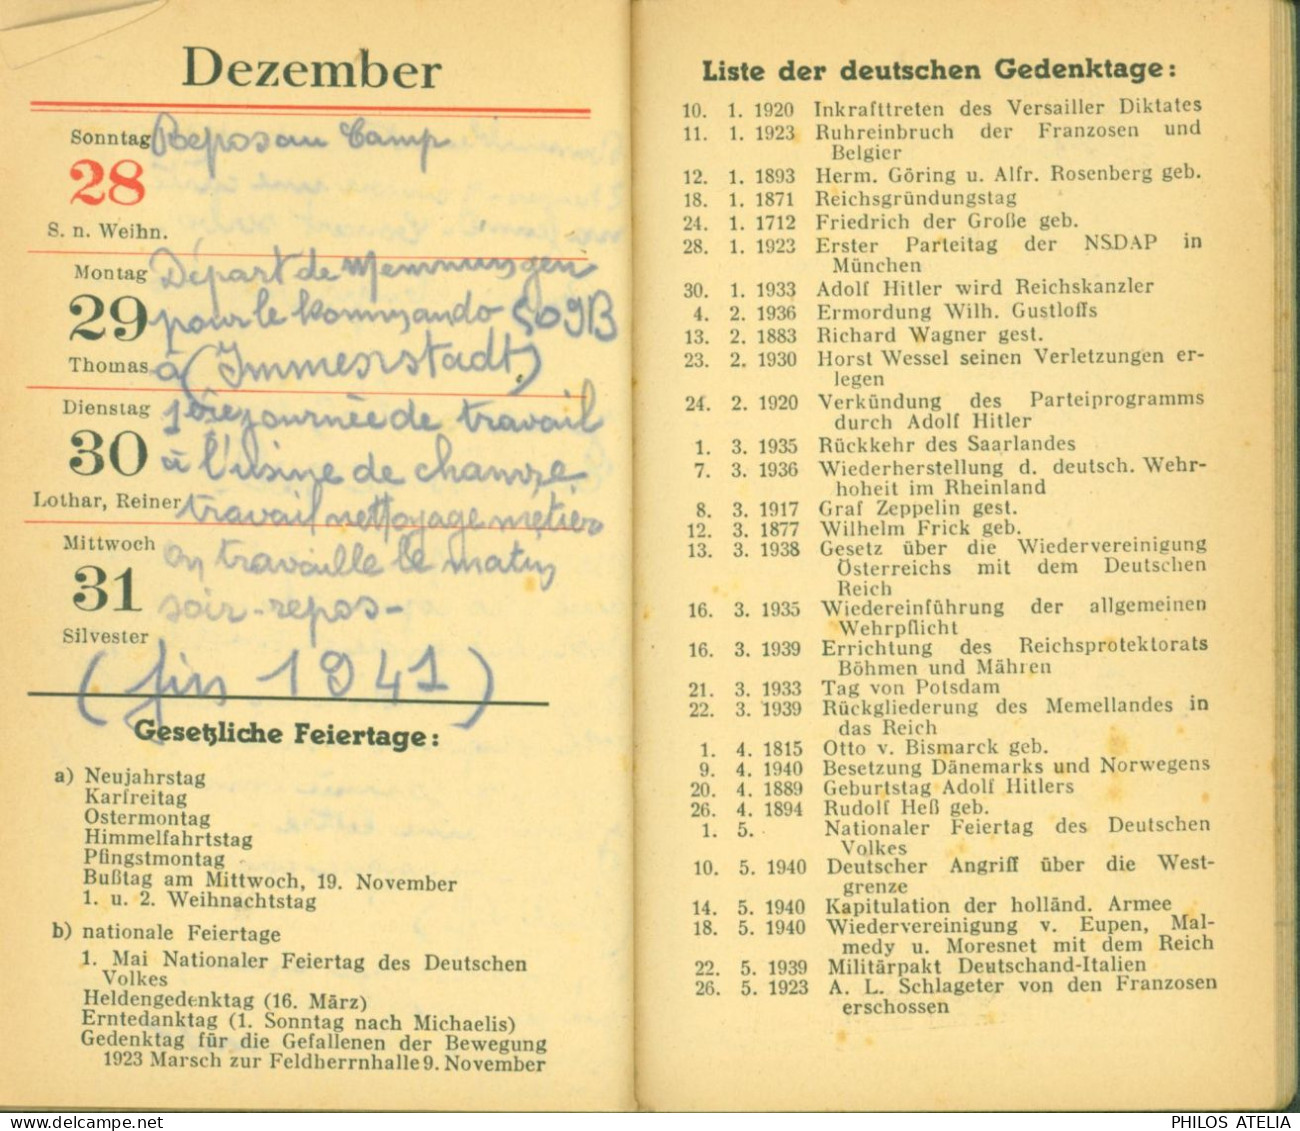 Guerre 40 Almanach Notiz Kalender 1941 Louis Serra De Port Vendres Prisonnier Stalag VIIB Memmingen Pro Pétain - Kalender